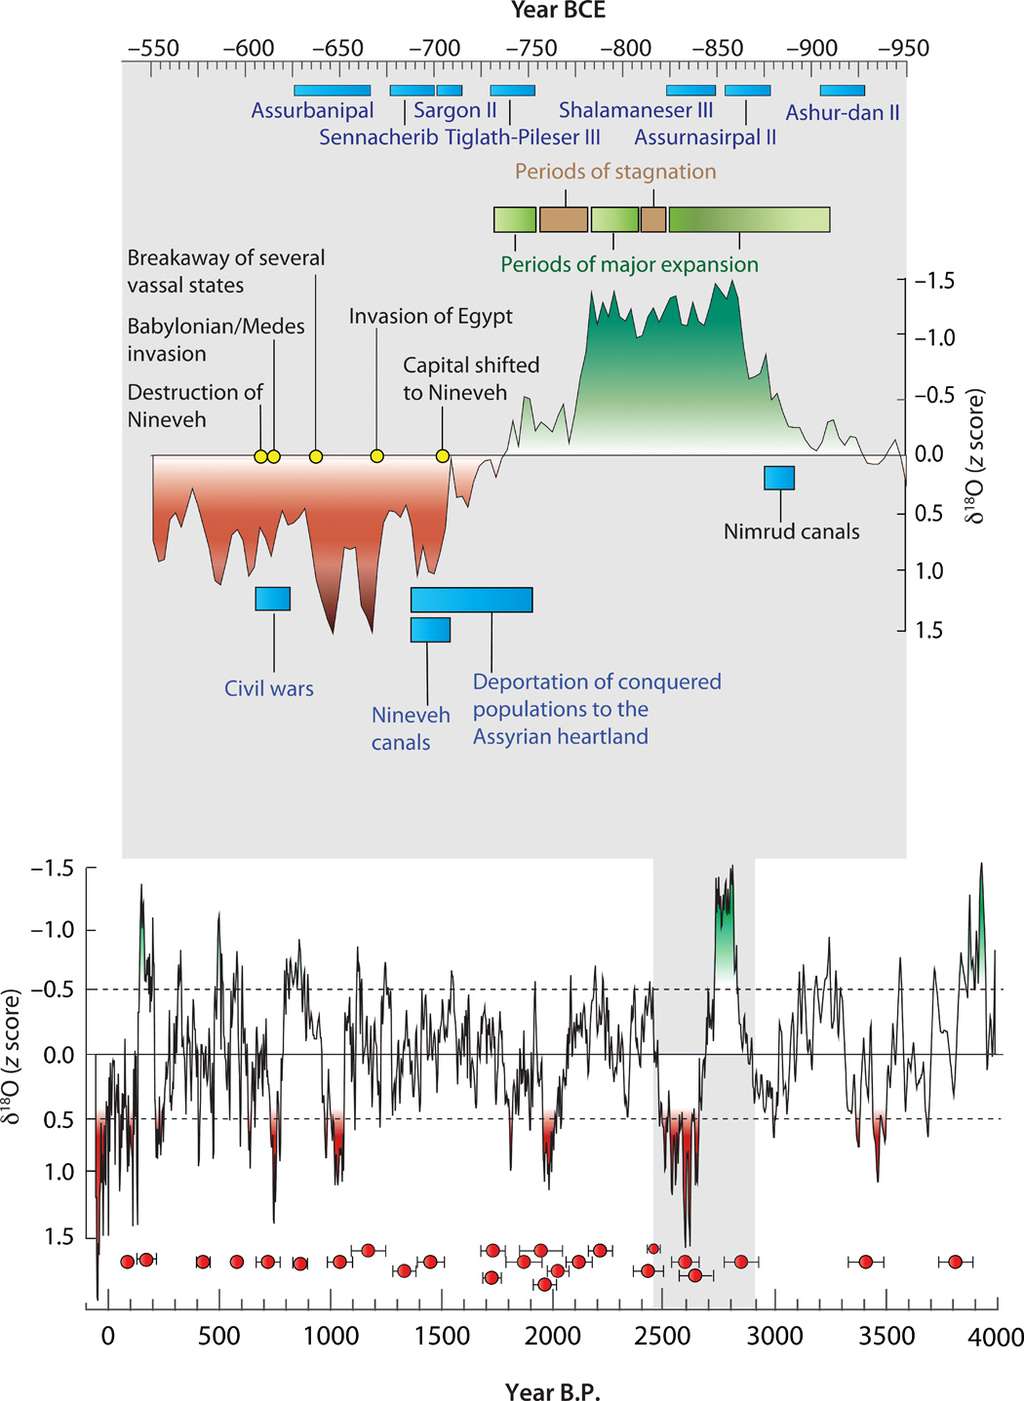 Les données de l'isotope δ<sup>18</sup>O montrent l'évolution de la pluviométrie lors des 4.000 dernières années, avec en rouge, les périodes de grande sécheresse, et en vert, les périodes à la pluviométrie généreuse. La période entre 550 et 950 ans avant J.-C. a été agrandie afin de distinguer les corrélations entre les évènements climatiques et l'Histoire de l'Assyrie. © Ashish Sinha, Science Advances